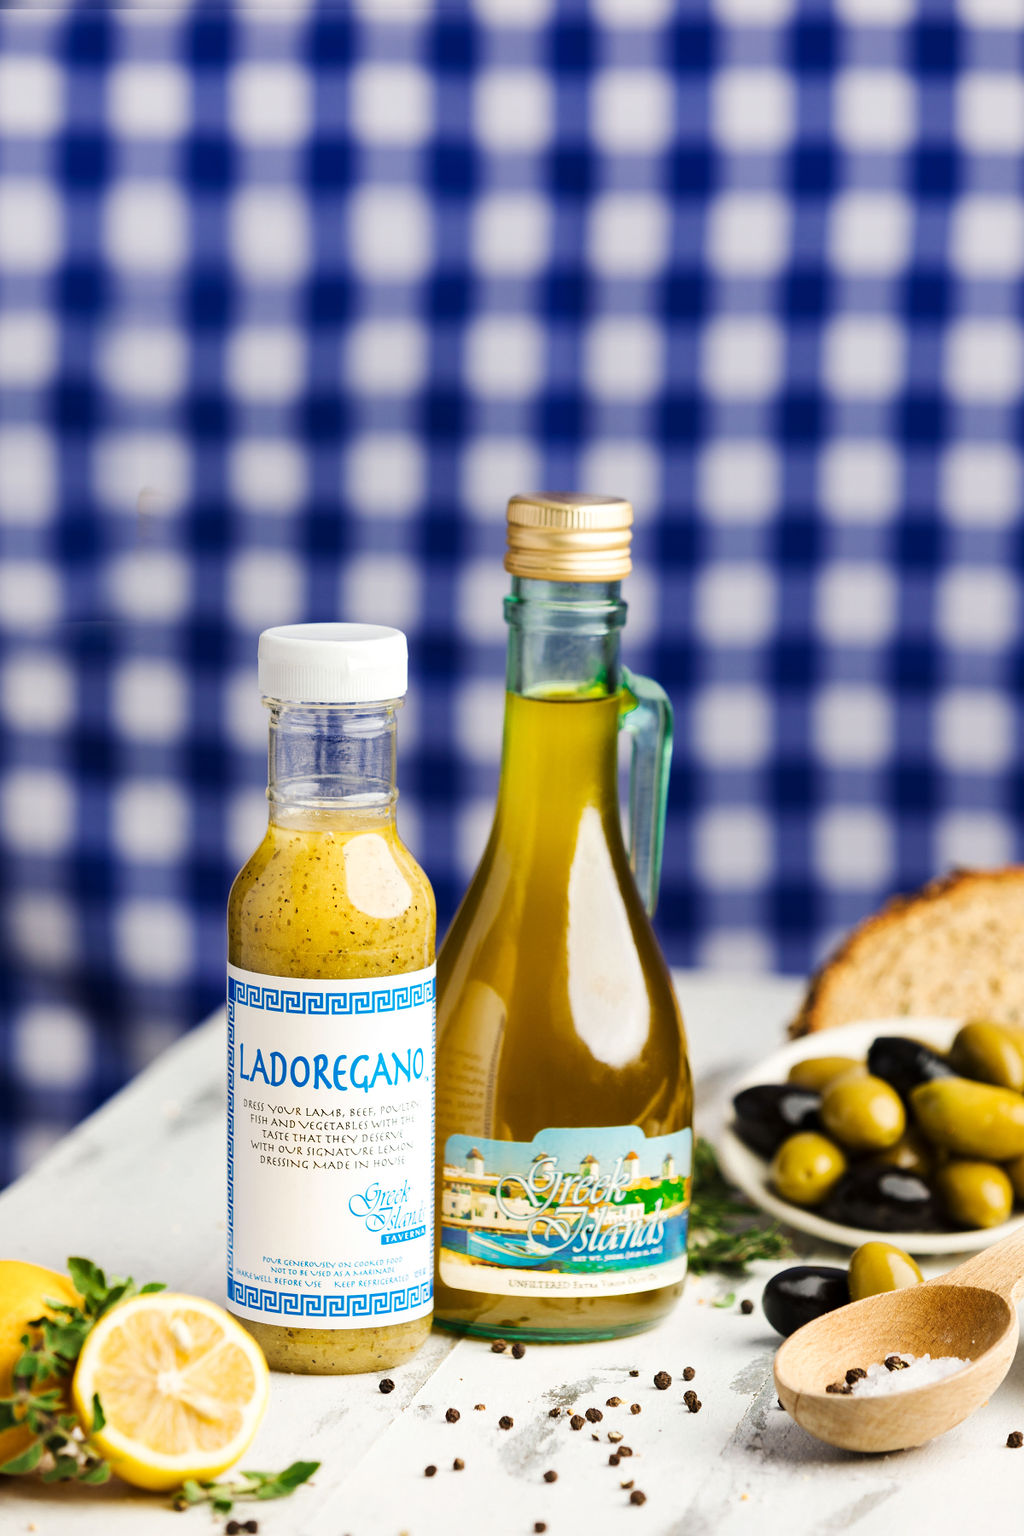 1 Olive Oil & 1 Ladoregano